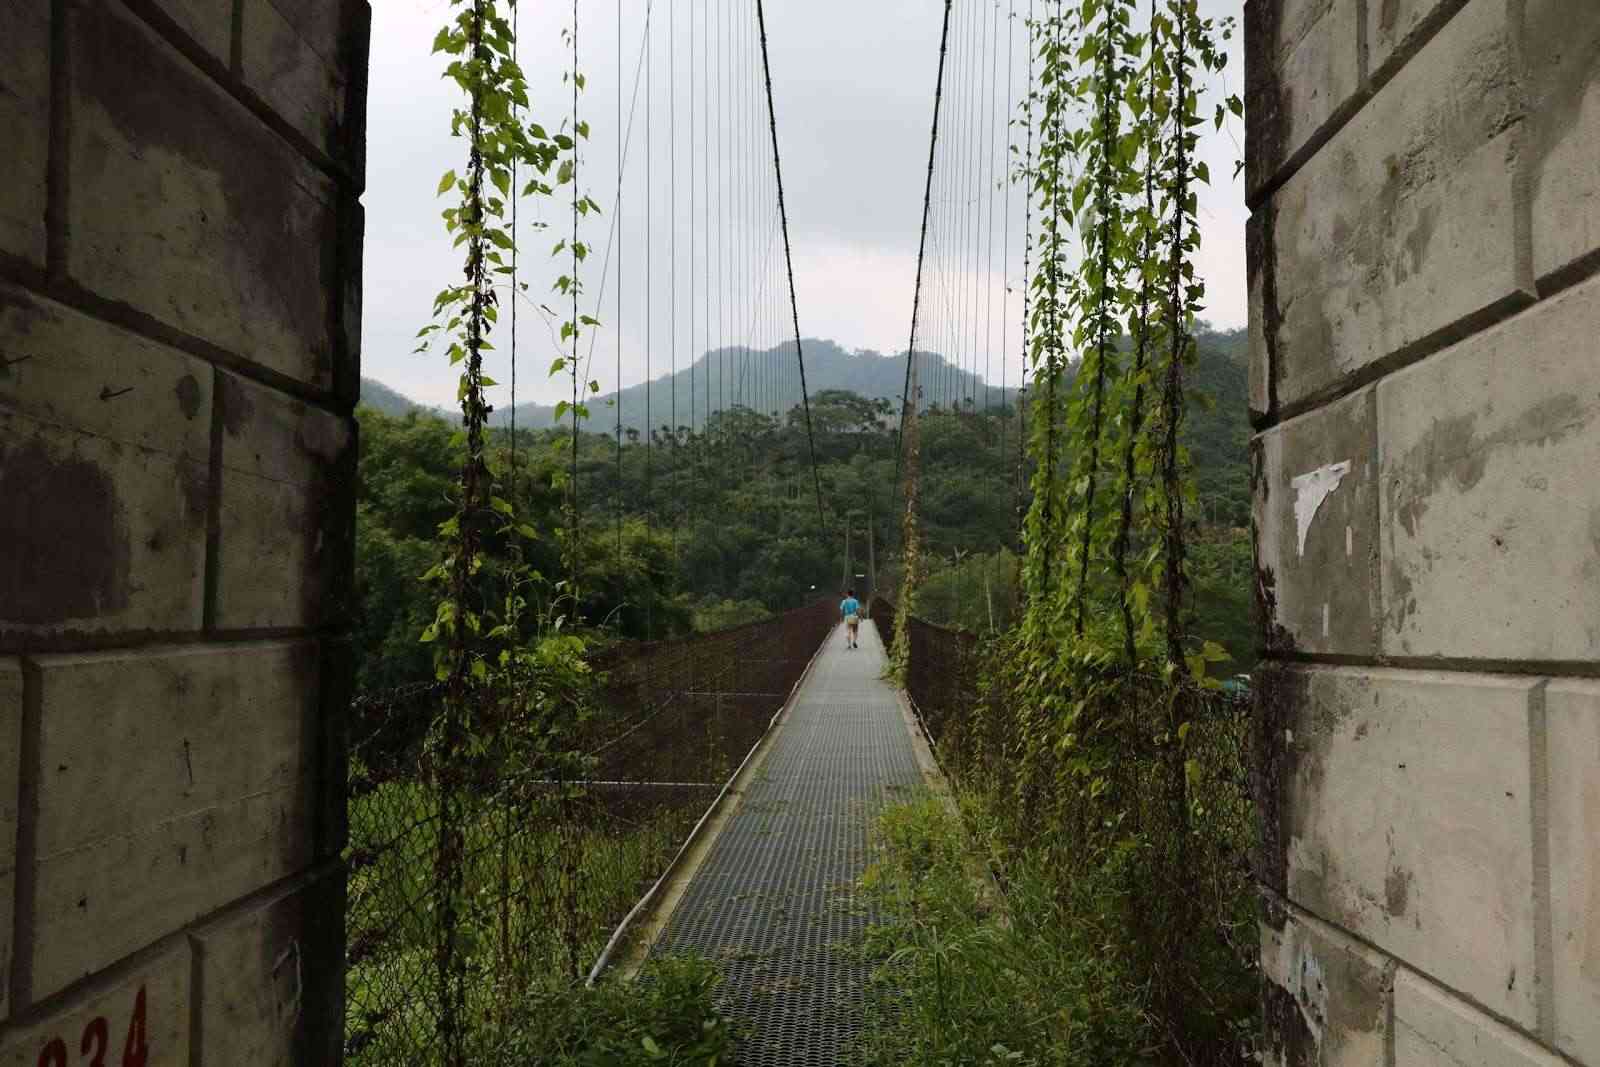 龍興吊橋/ 攝影者: 張兆智

(由第三方資訊提供)